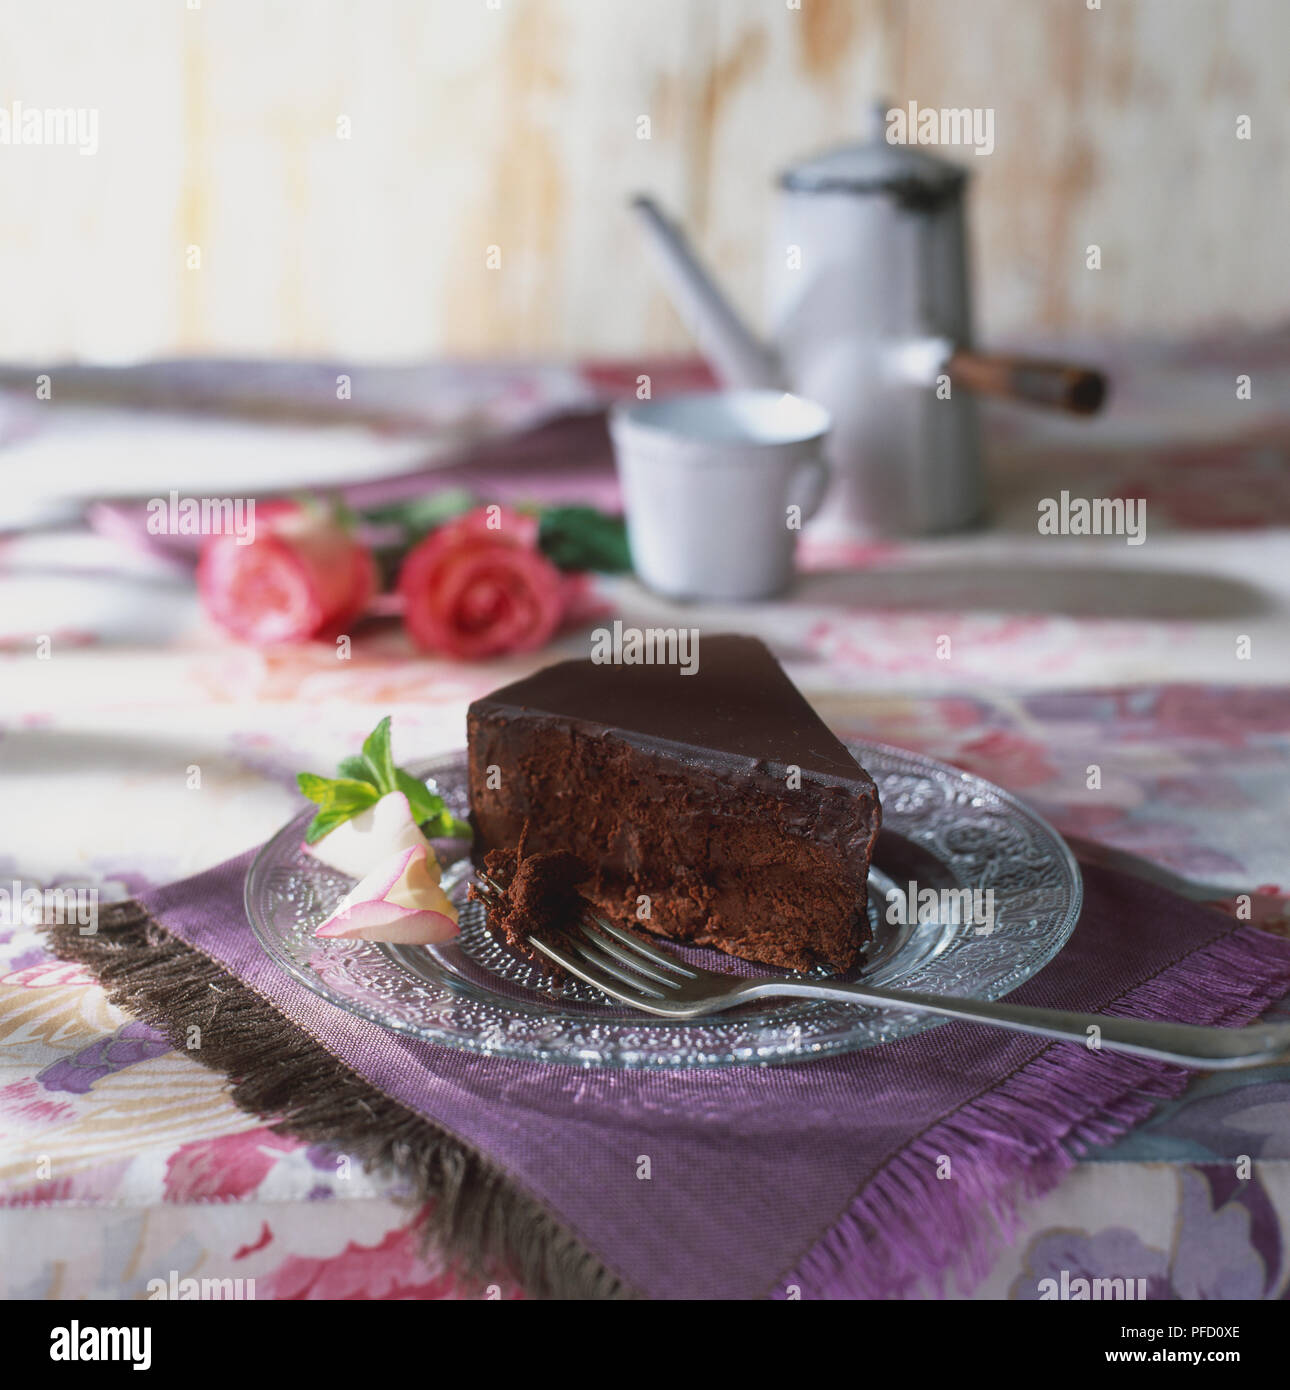 Stück Schokolade Kuchen auf Glasplatte, neben Silber Gabel und dekorativen rose bud, auf lila Unterlage, Rosenknospen, Teekanne und Tasse im Hintergrund, Tischdecke mit Blumenmuster Stockfoto